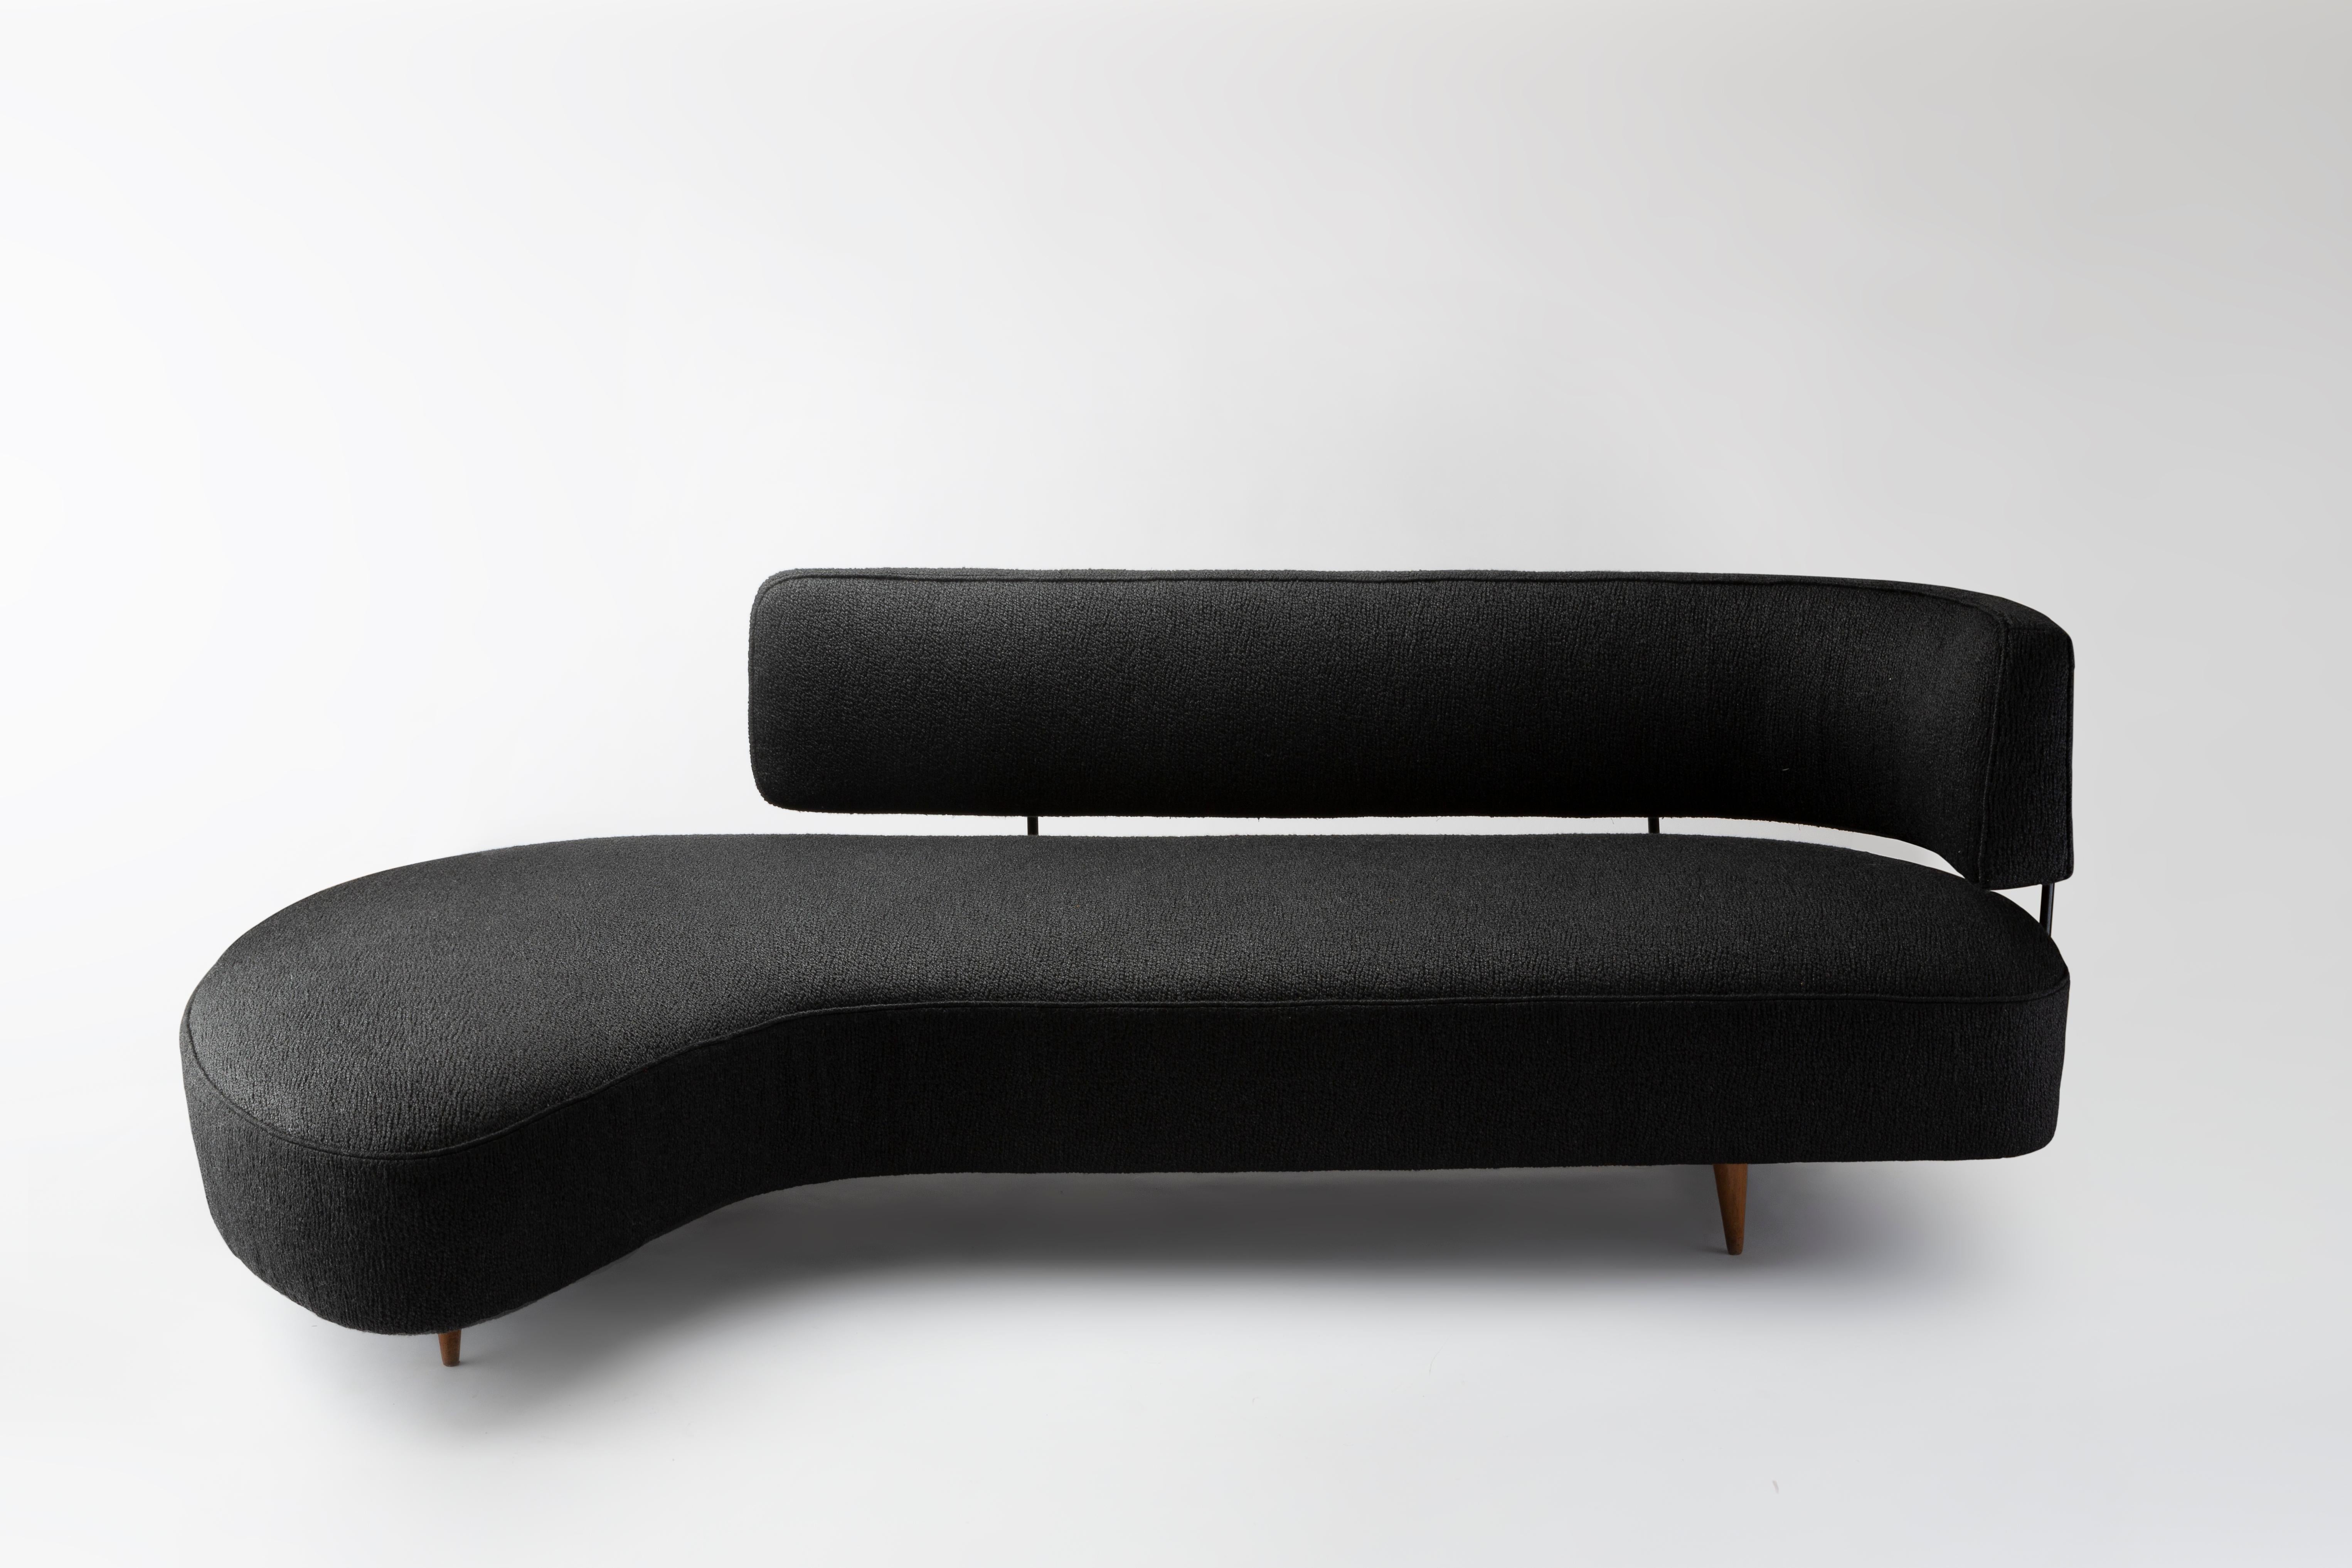 Rare canapé de forme libre du designer japonais Taichiro Nakai, en bois de cerisier, métal laqué noir et tissu moucheté (Pierre Frey), fabriqué par La Permanente Mobili, Italie.
Le modèle a été conçu et présenté lors de l'exposition 